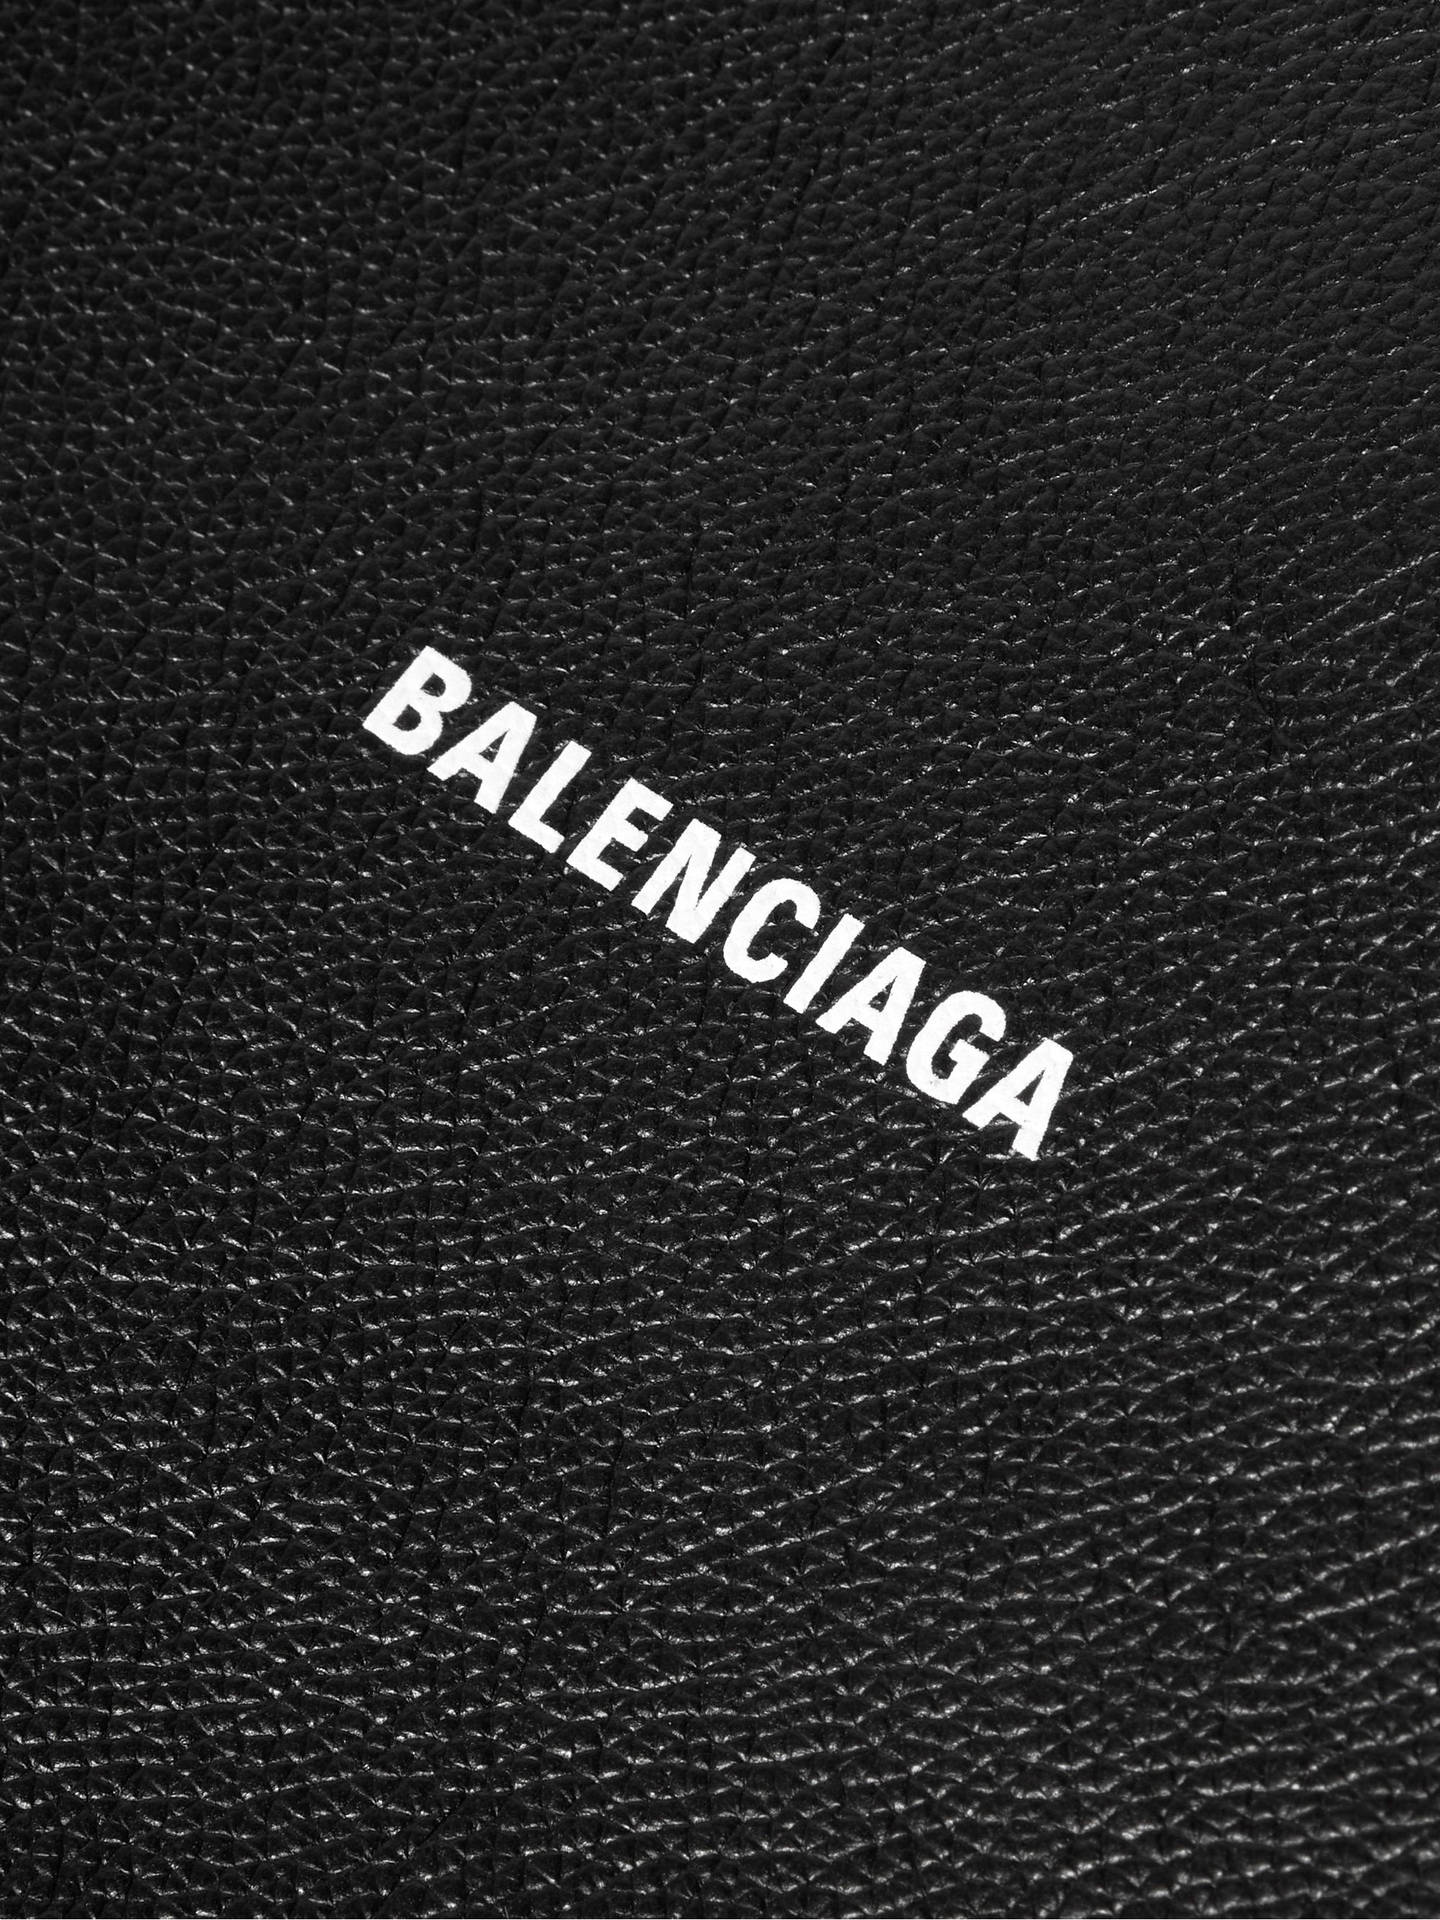 Chia sẻ 77 về balenciaga wallpaper hd mới nhất  cdgdbentreeduvn